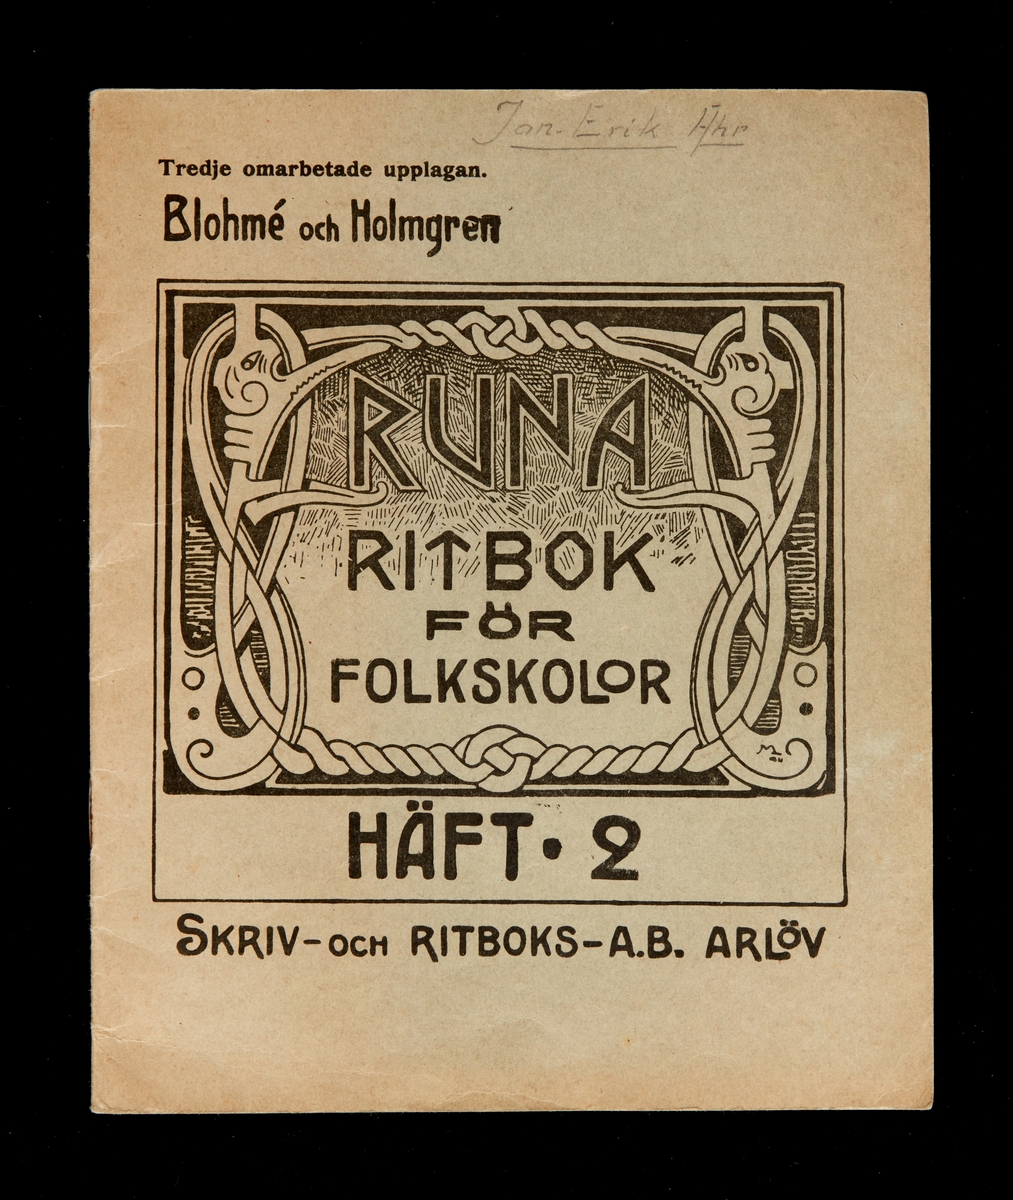 Tre stycken häften, RUNA Ritbok för folkskolor. Skriv - och Ritboks - AB Arlöv. Tredje omarbetade upplagan. Blohmé och Holmgren.

HÄFT A, HÄFT B, HÄFT 2.

Kindergarten.